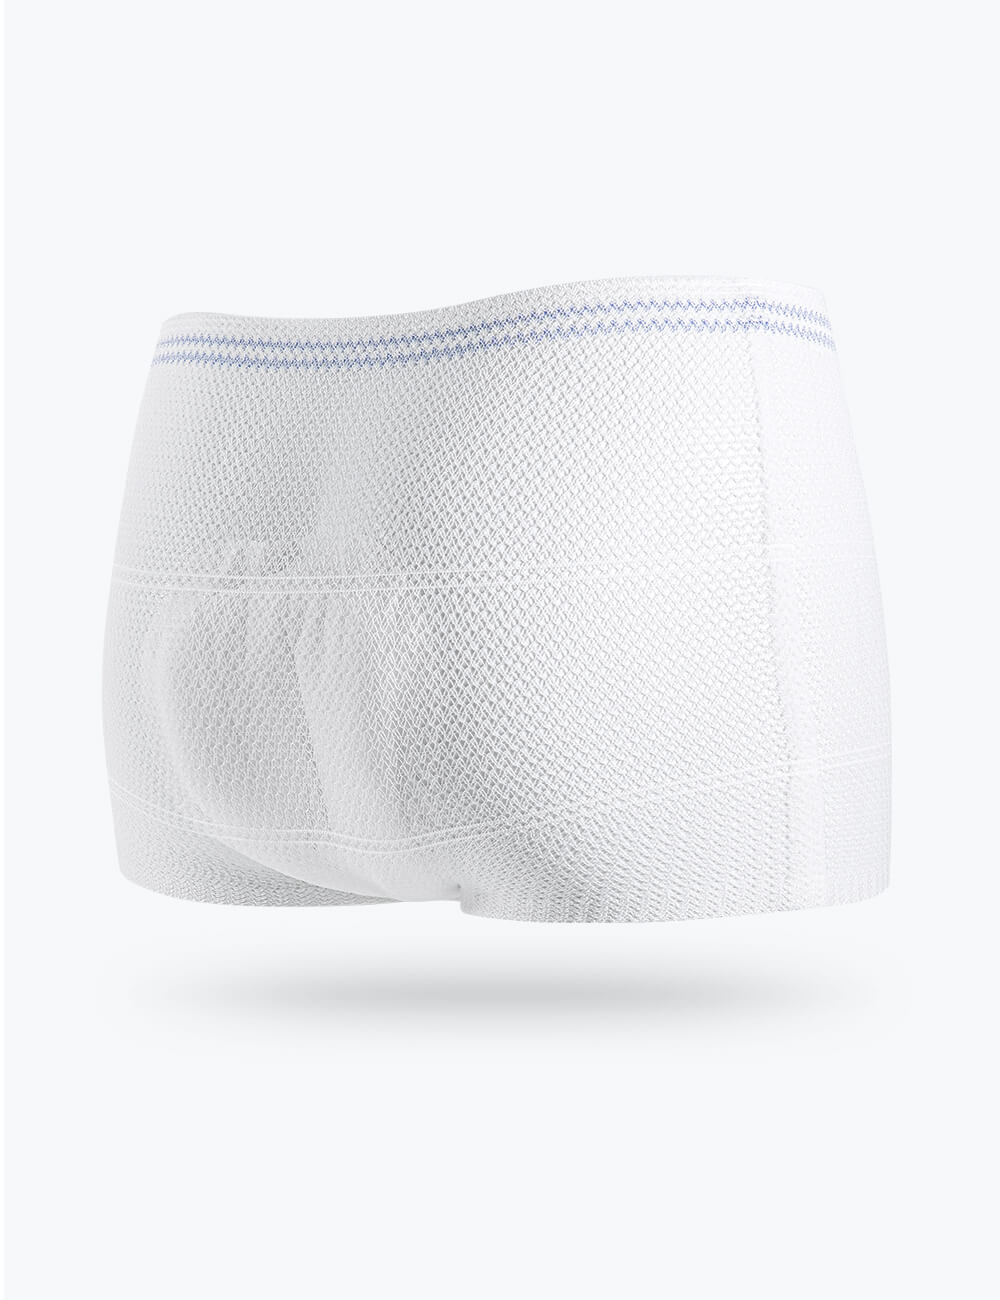 Disposable Mesh Underwear - 2721